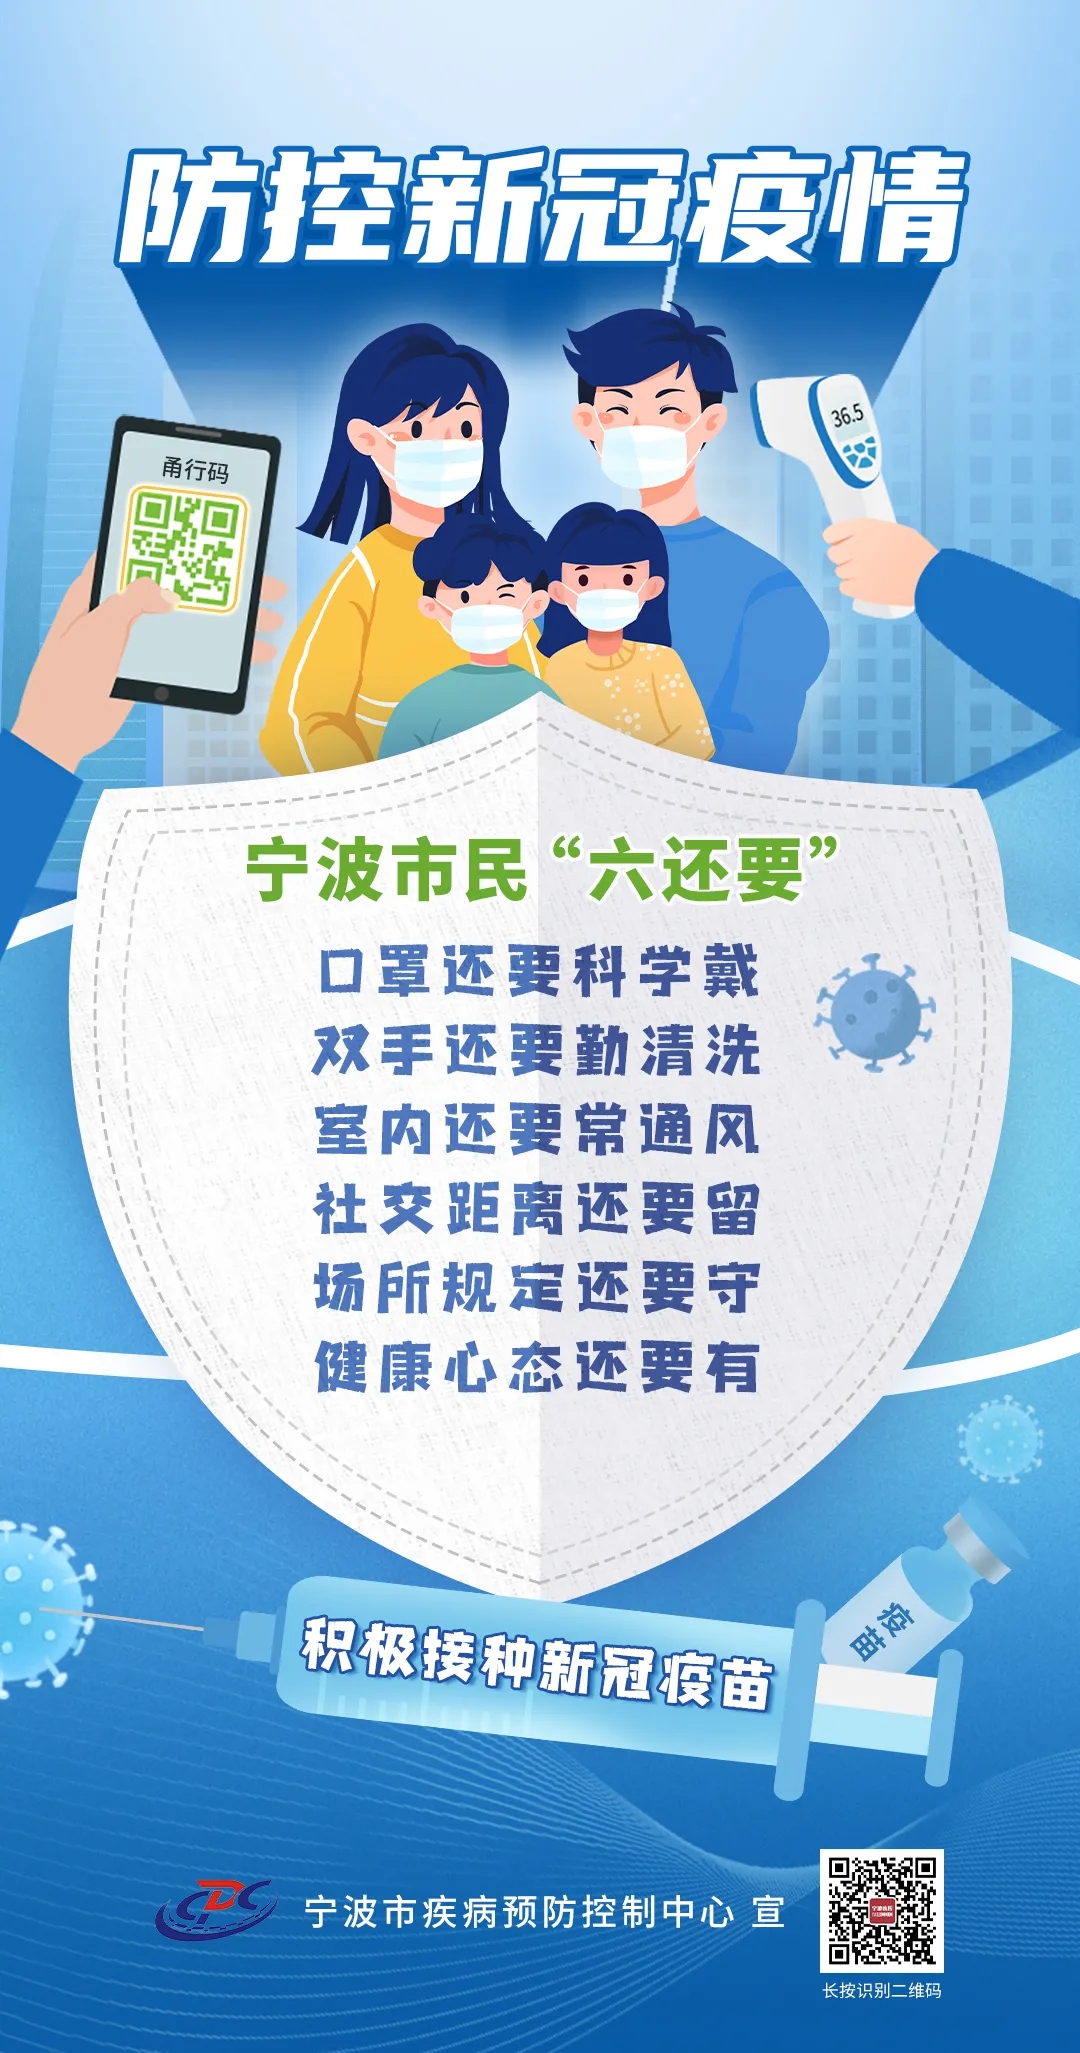 WeChat Image_20211102153054.jpg